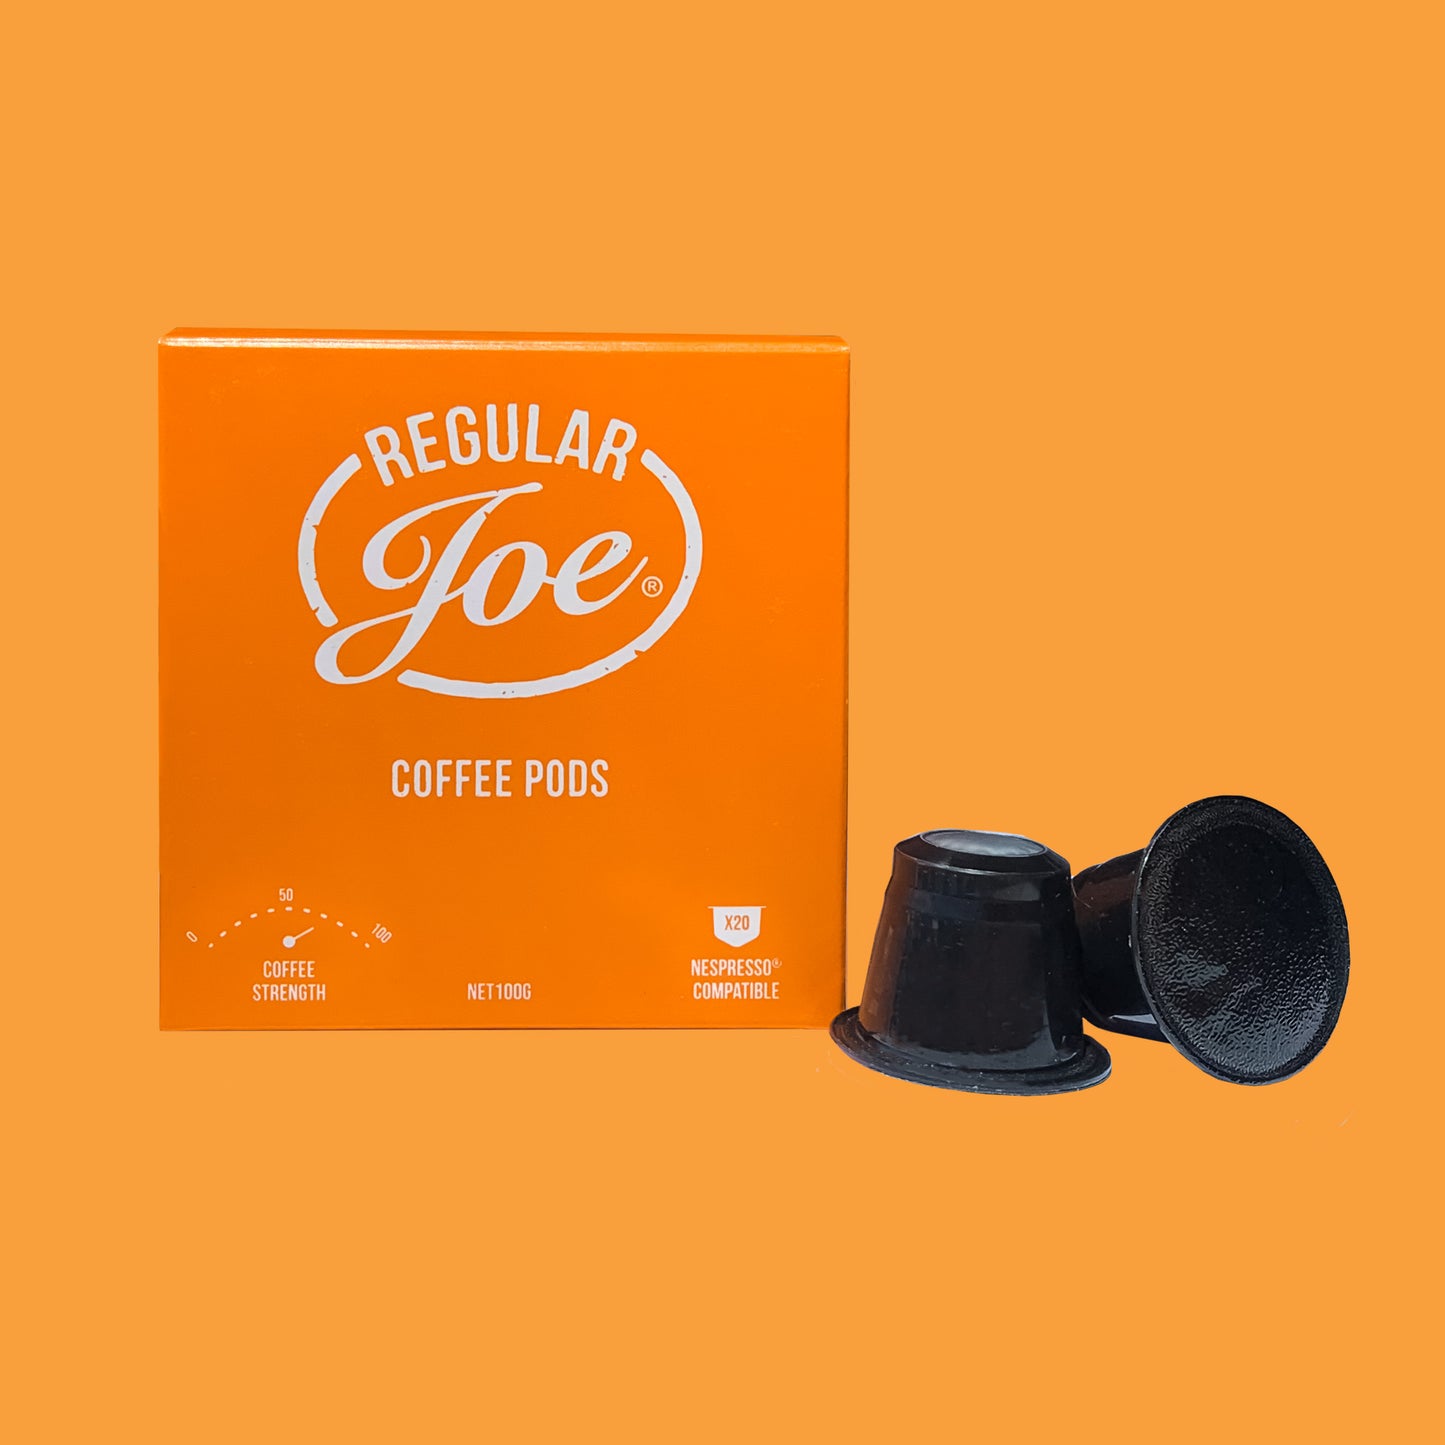 Regular Joe - NESPRESSO® Compatible Coffee Pods